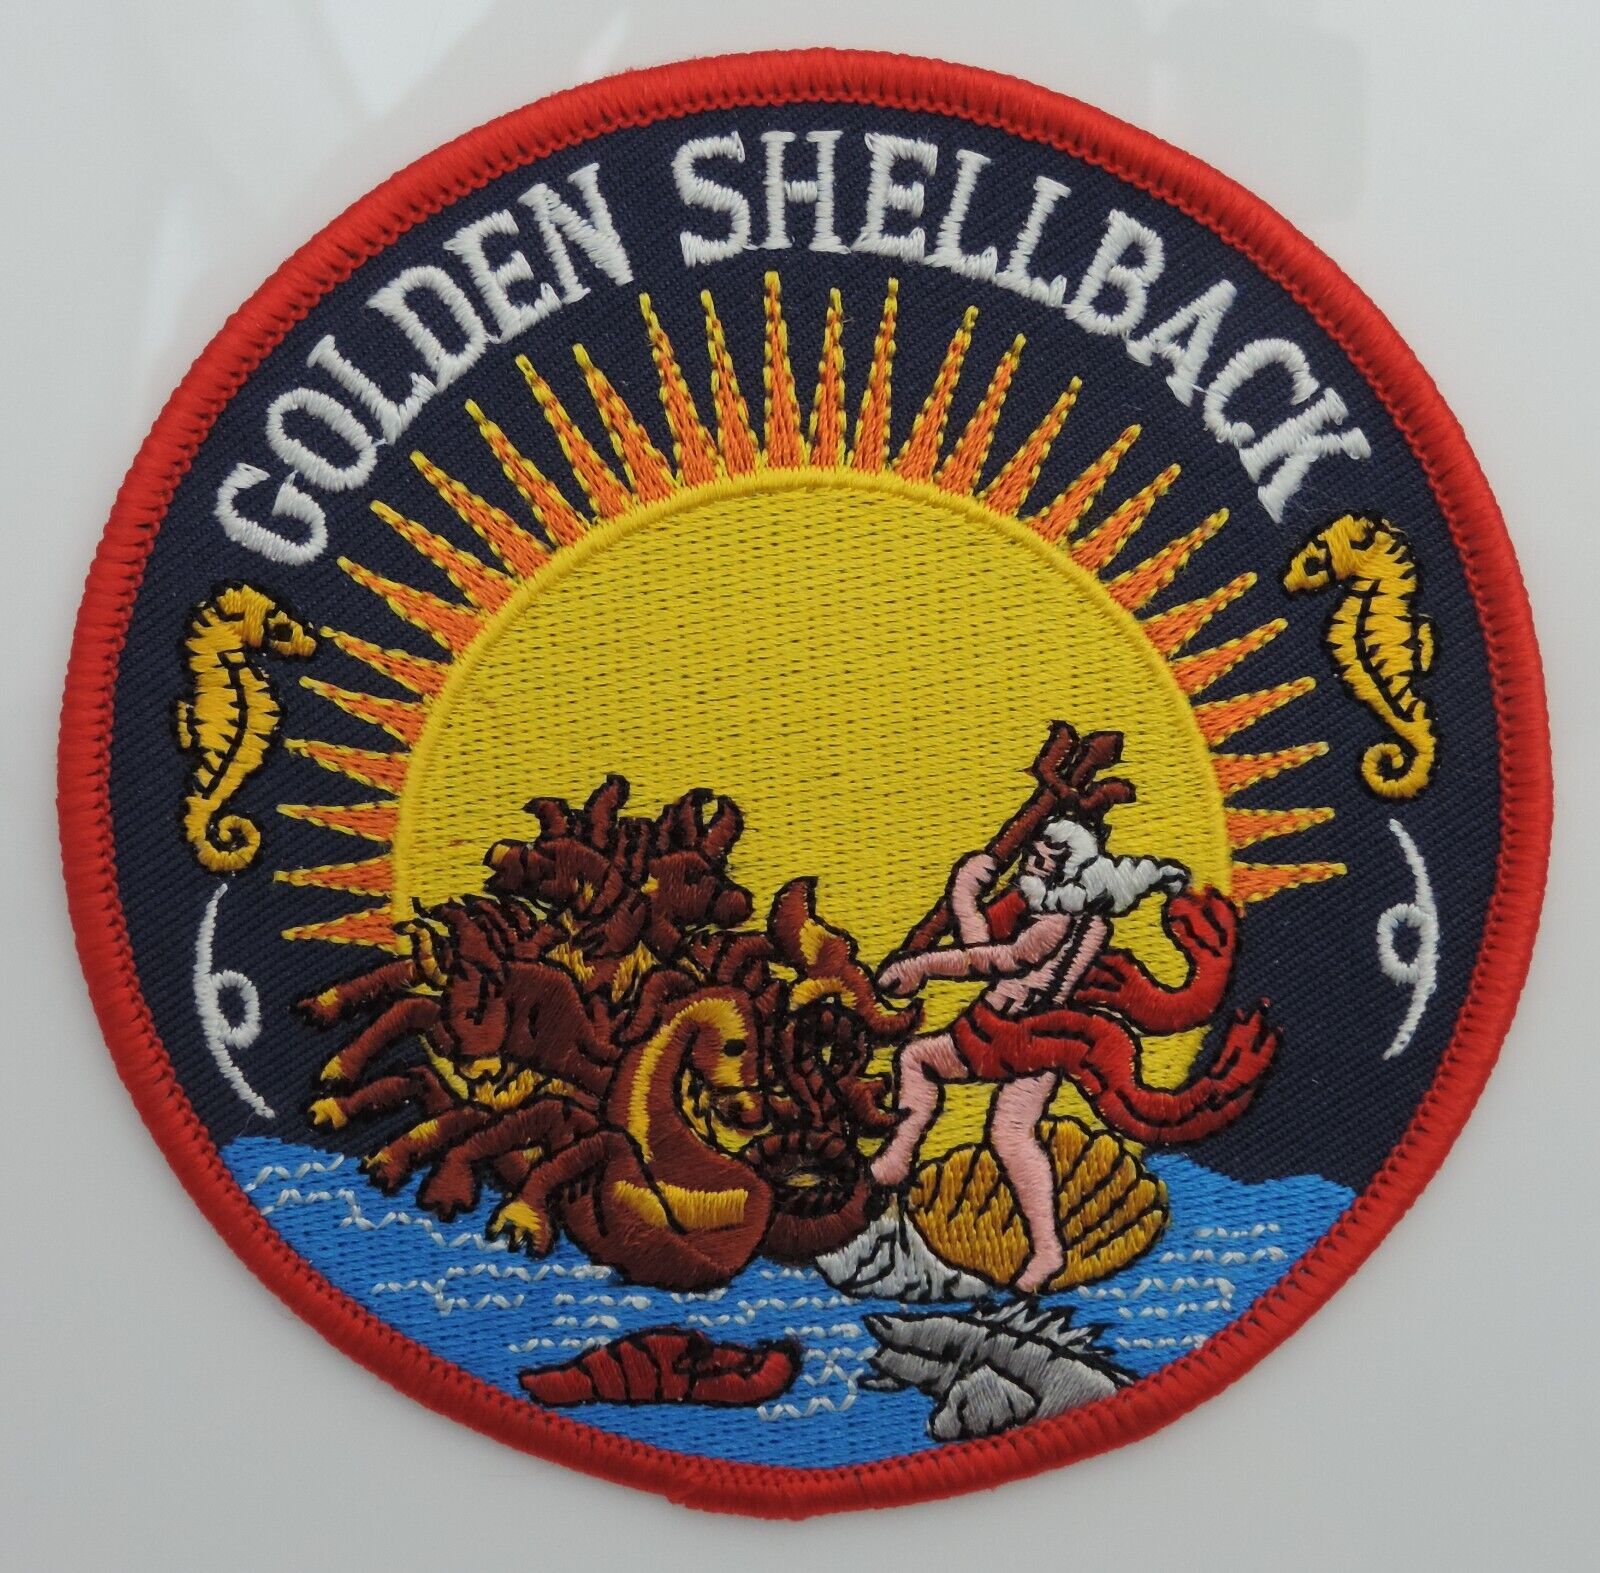 U.S Navy Golden Shellback Patch